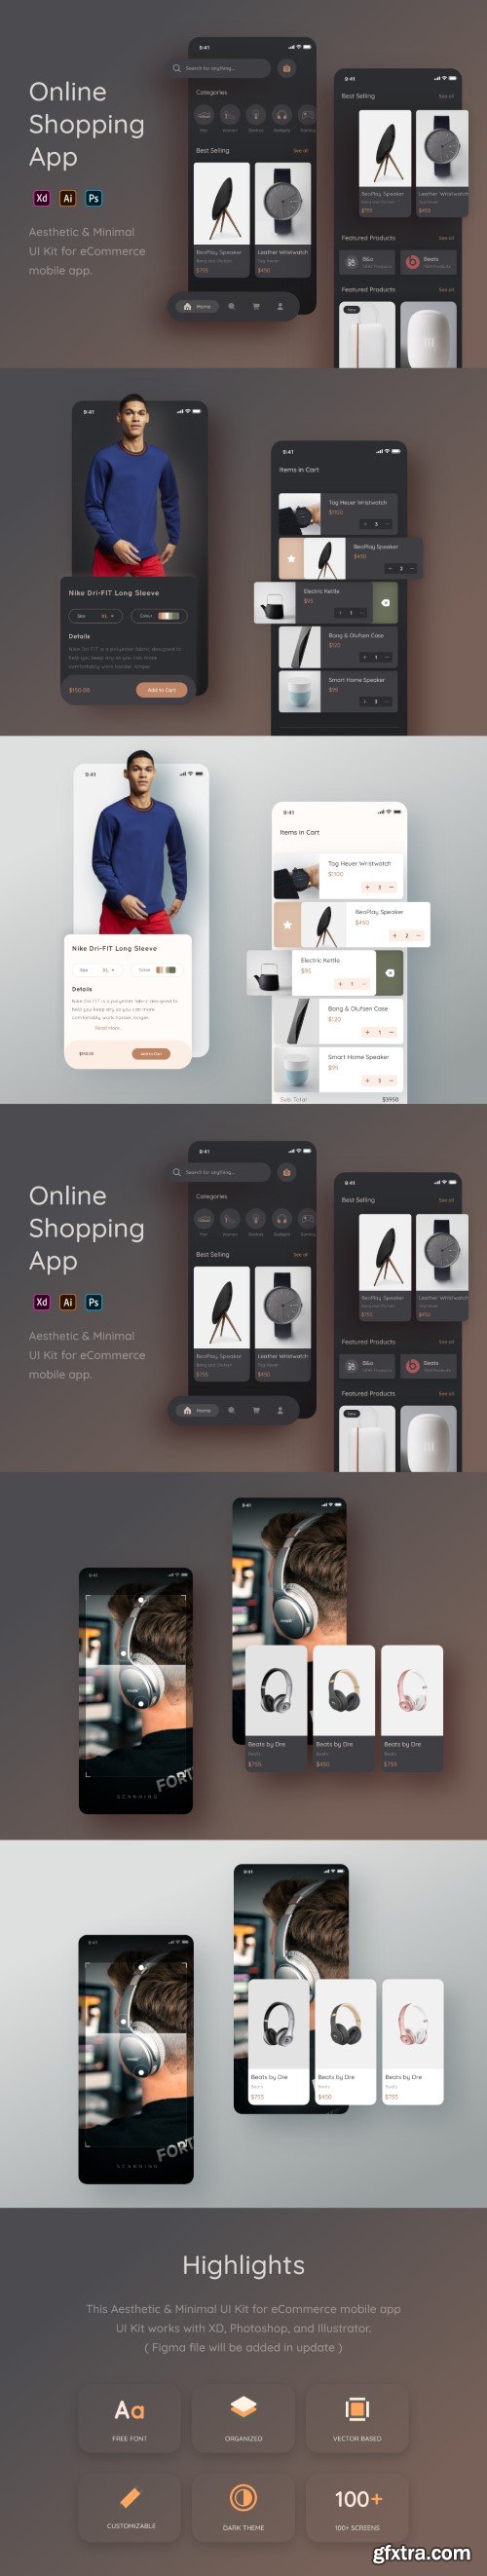 UI8 - Online Shopping App